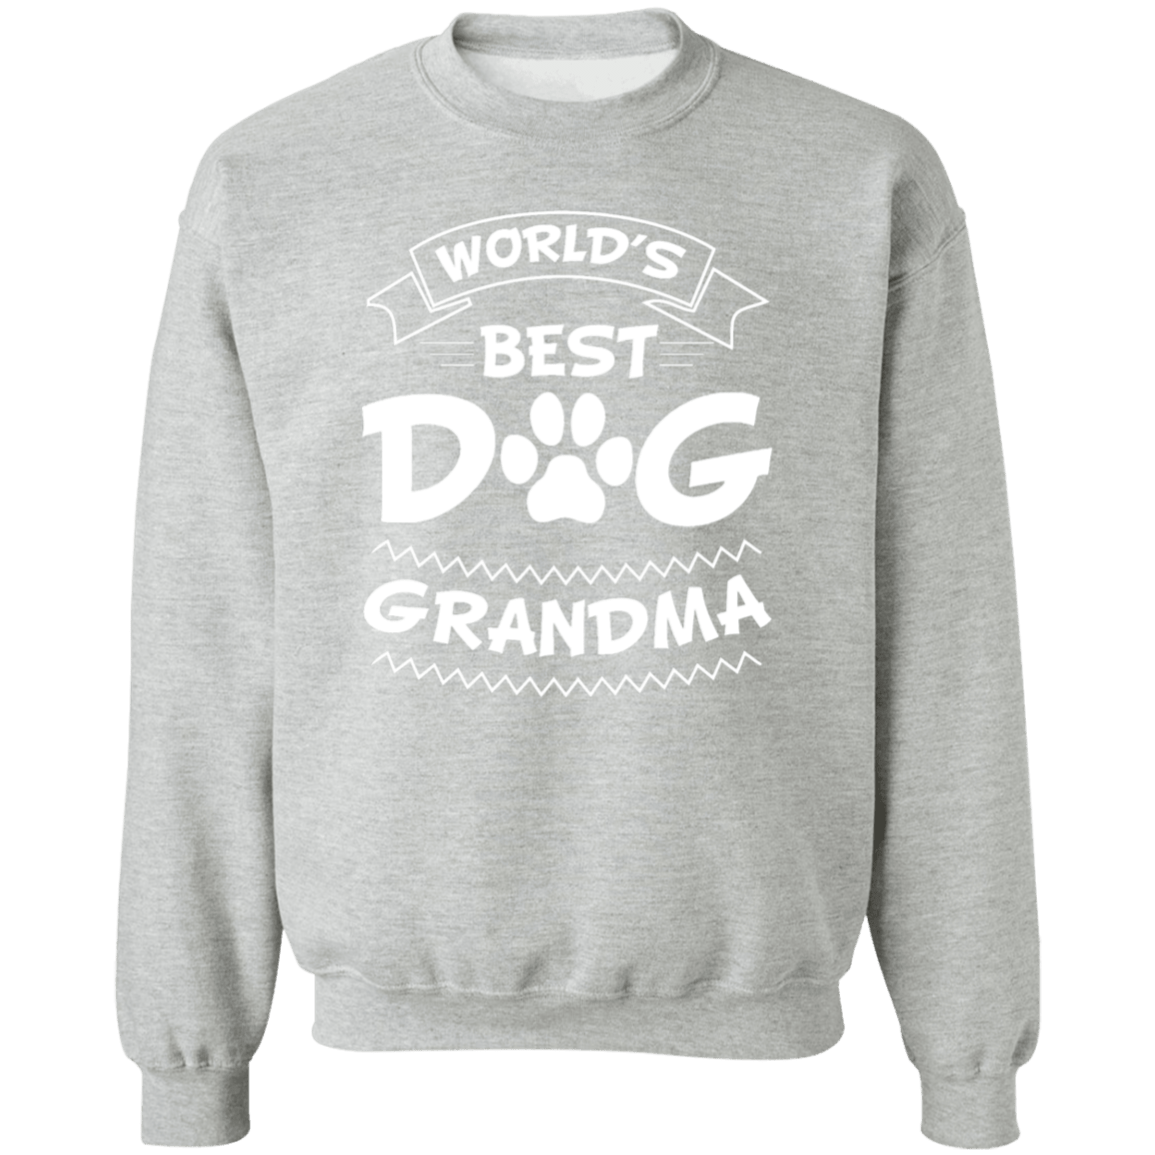 World's Best Dog Grandma - Sweatshirt.